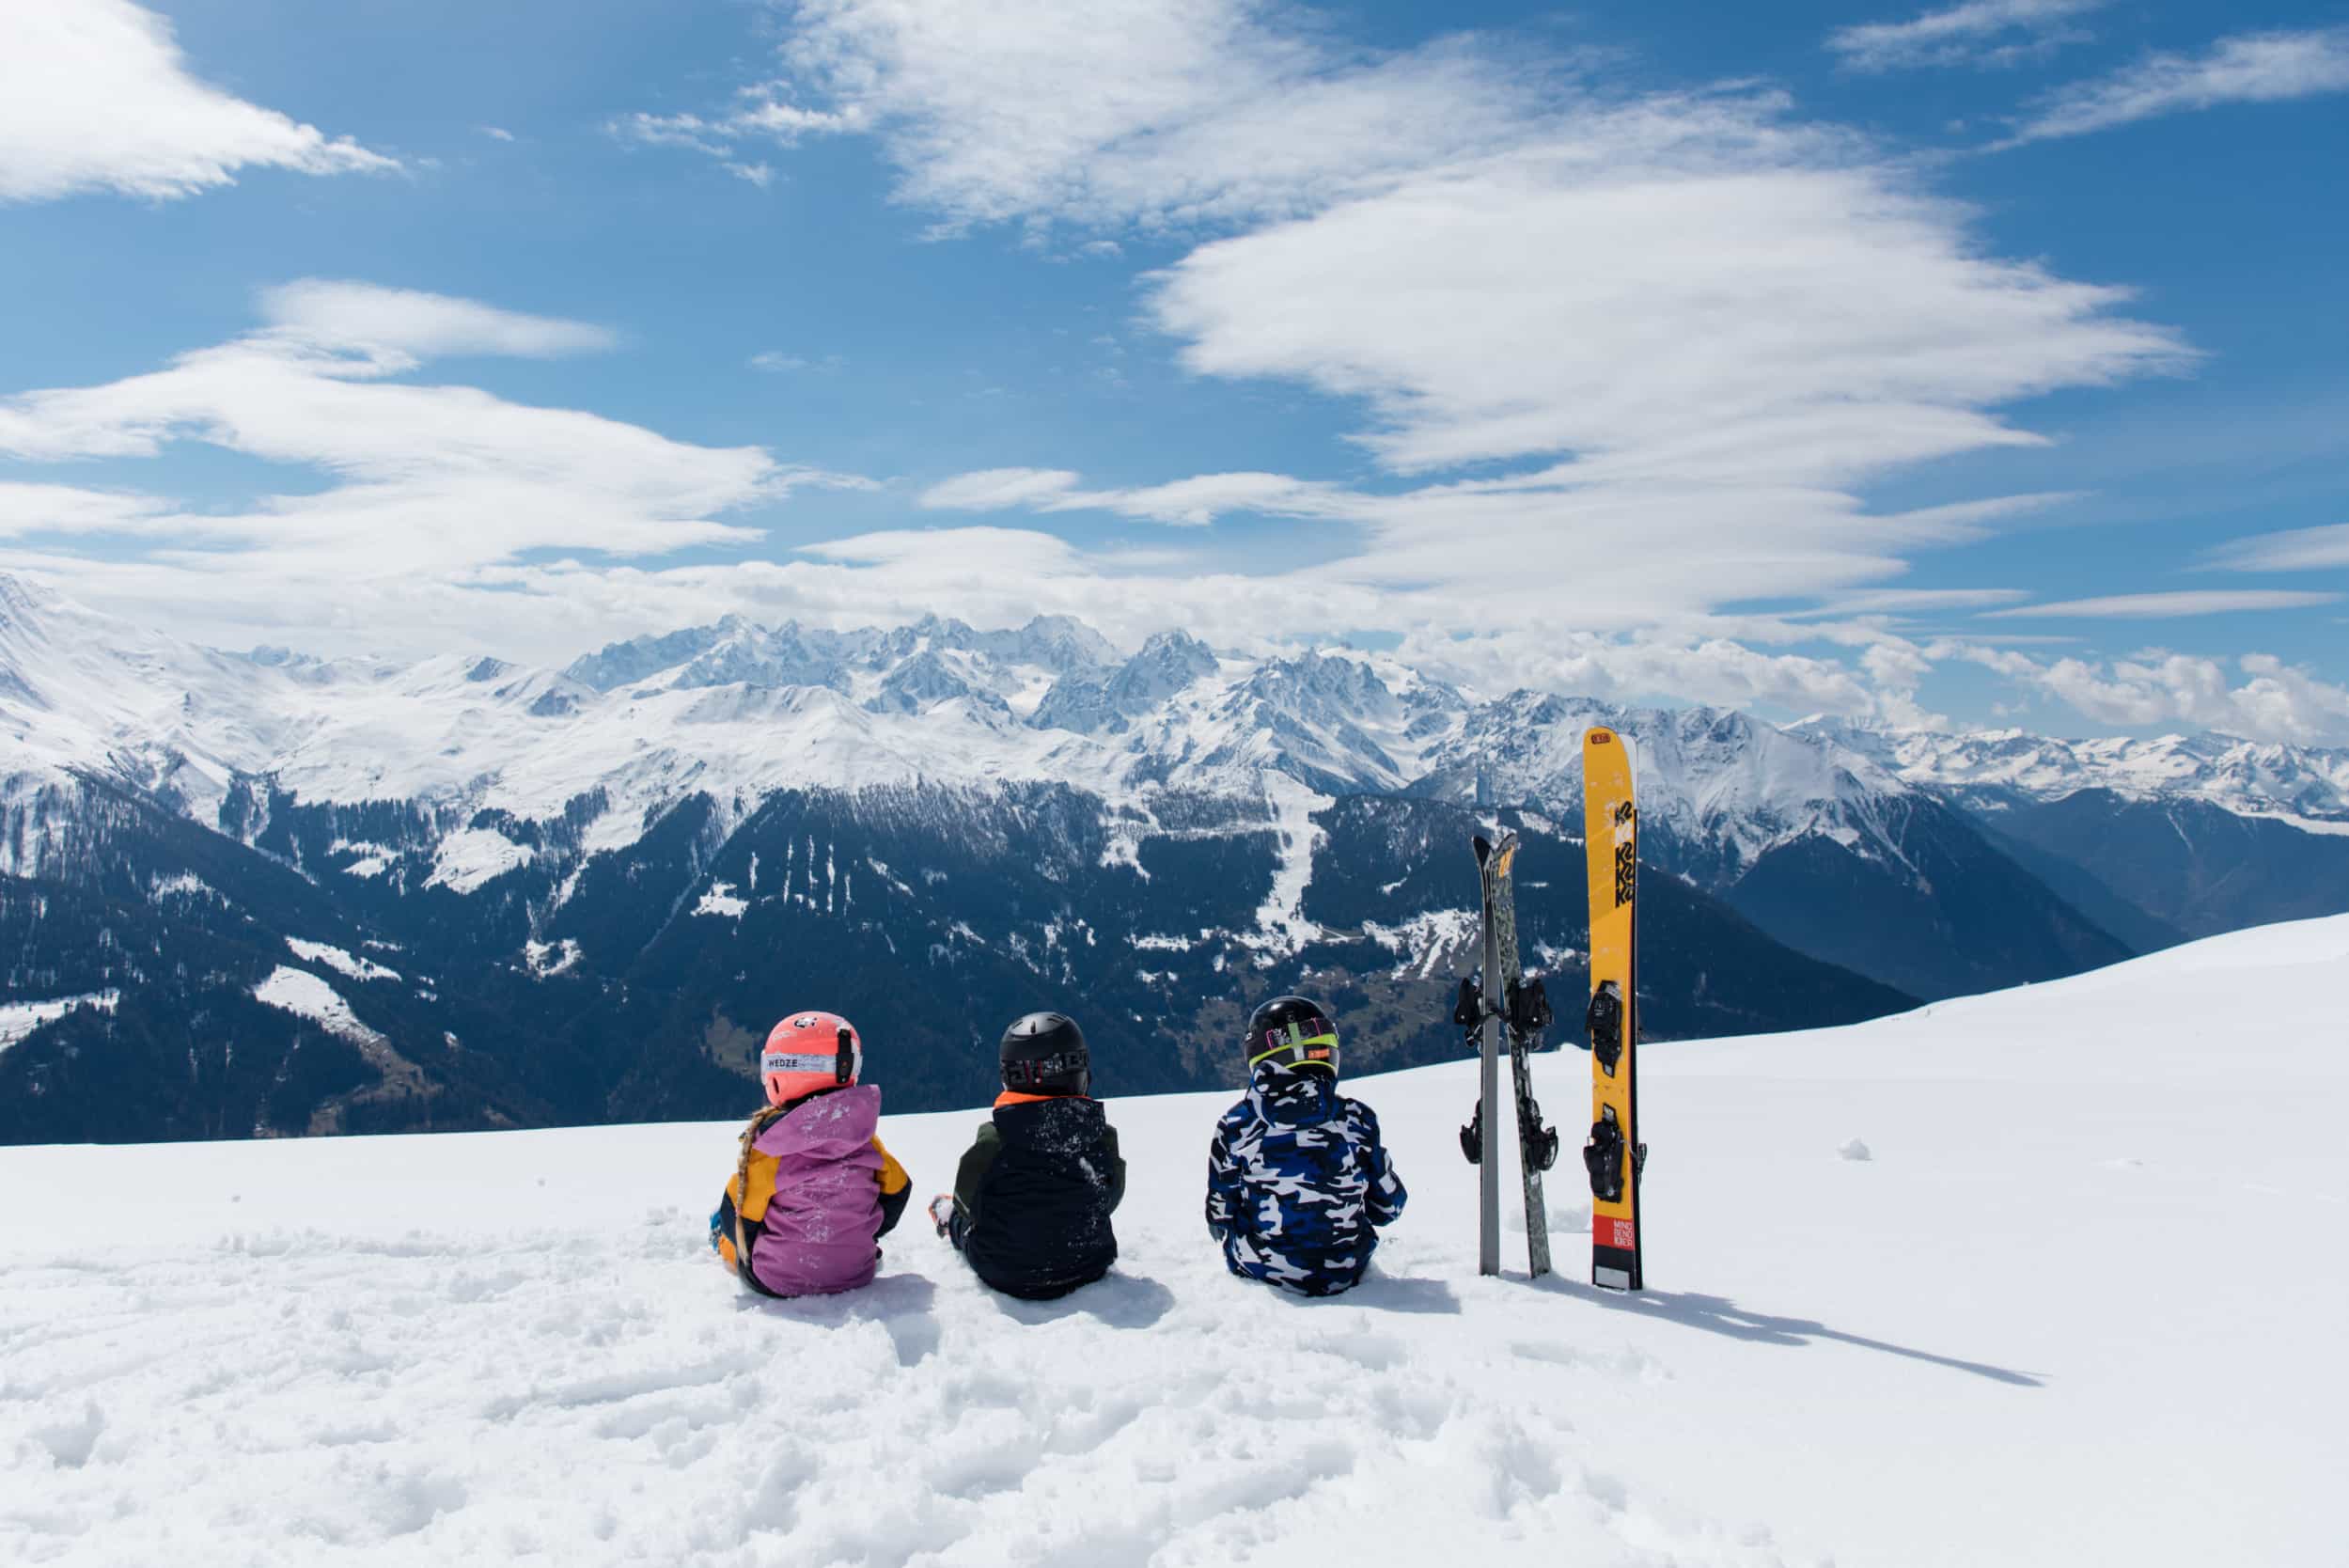 Les meilleures stations de ski pour débuter : notre sélection en Europe